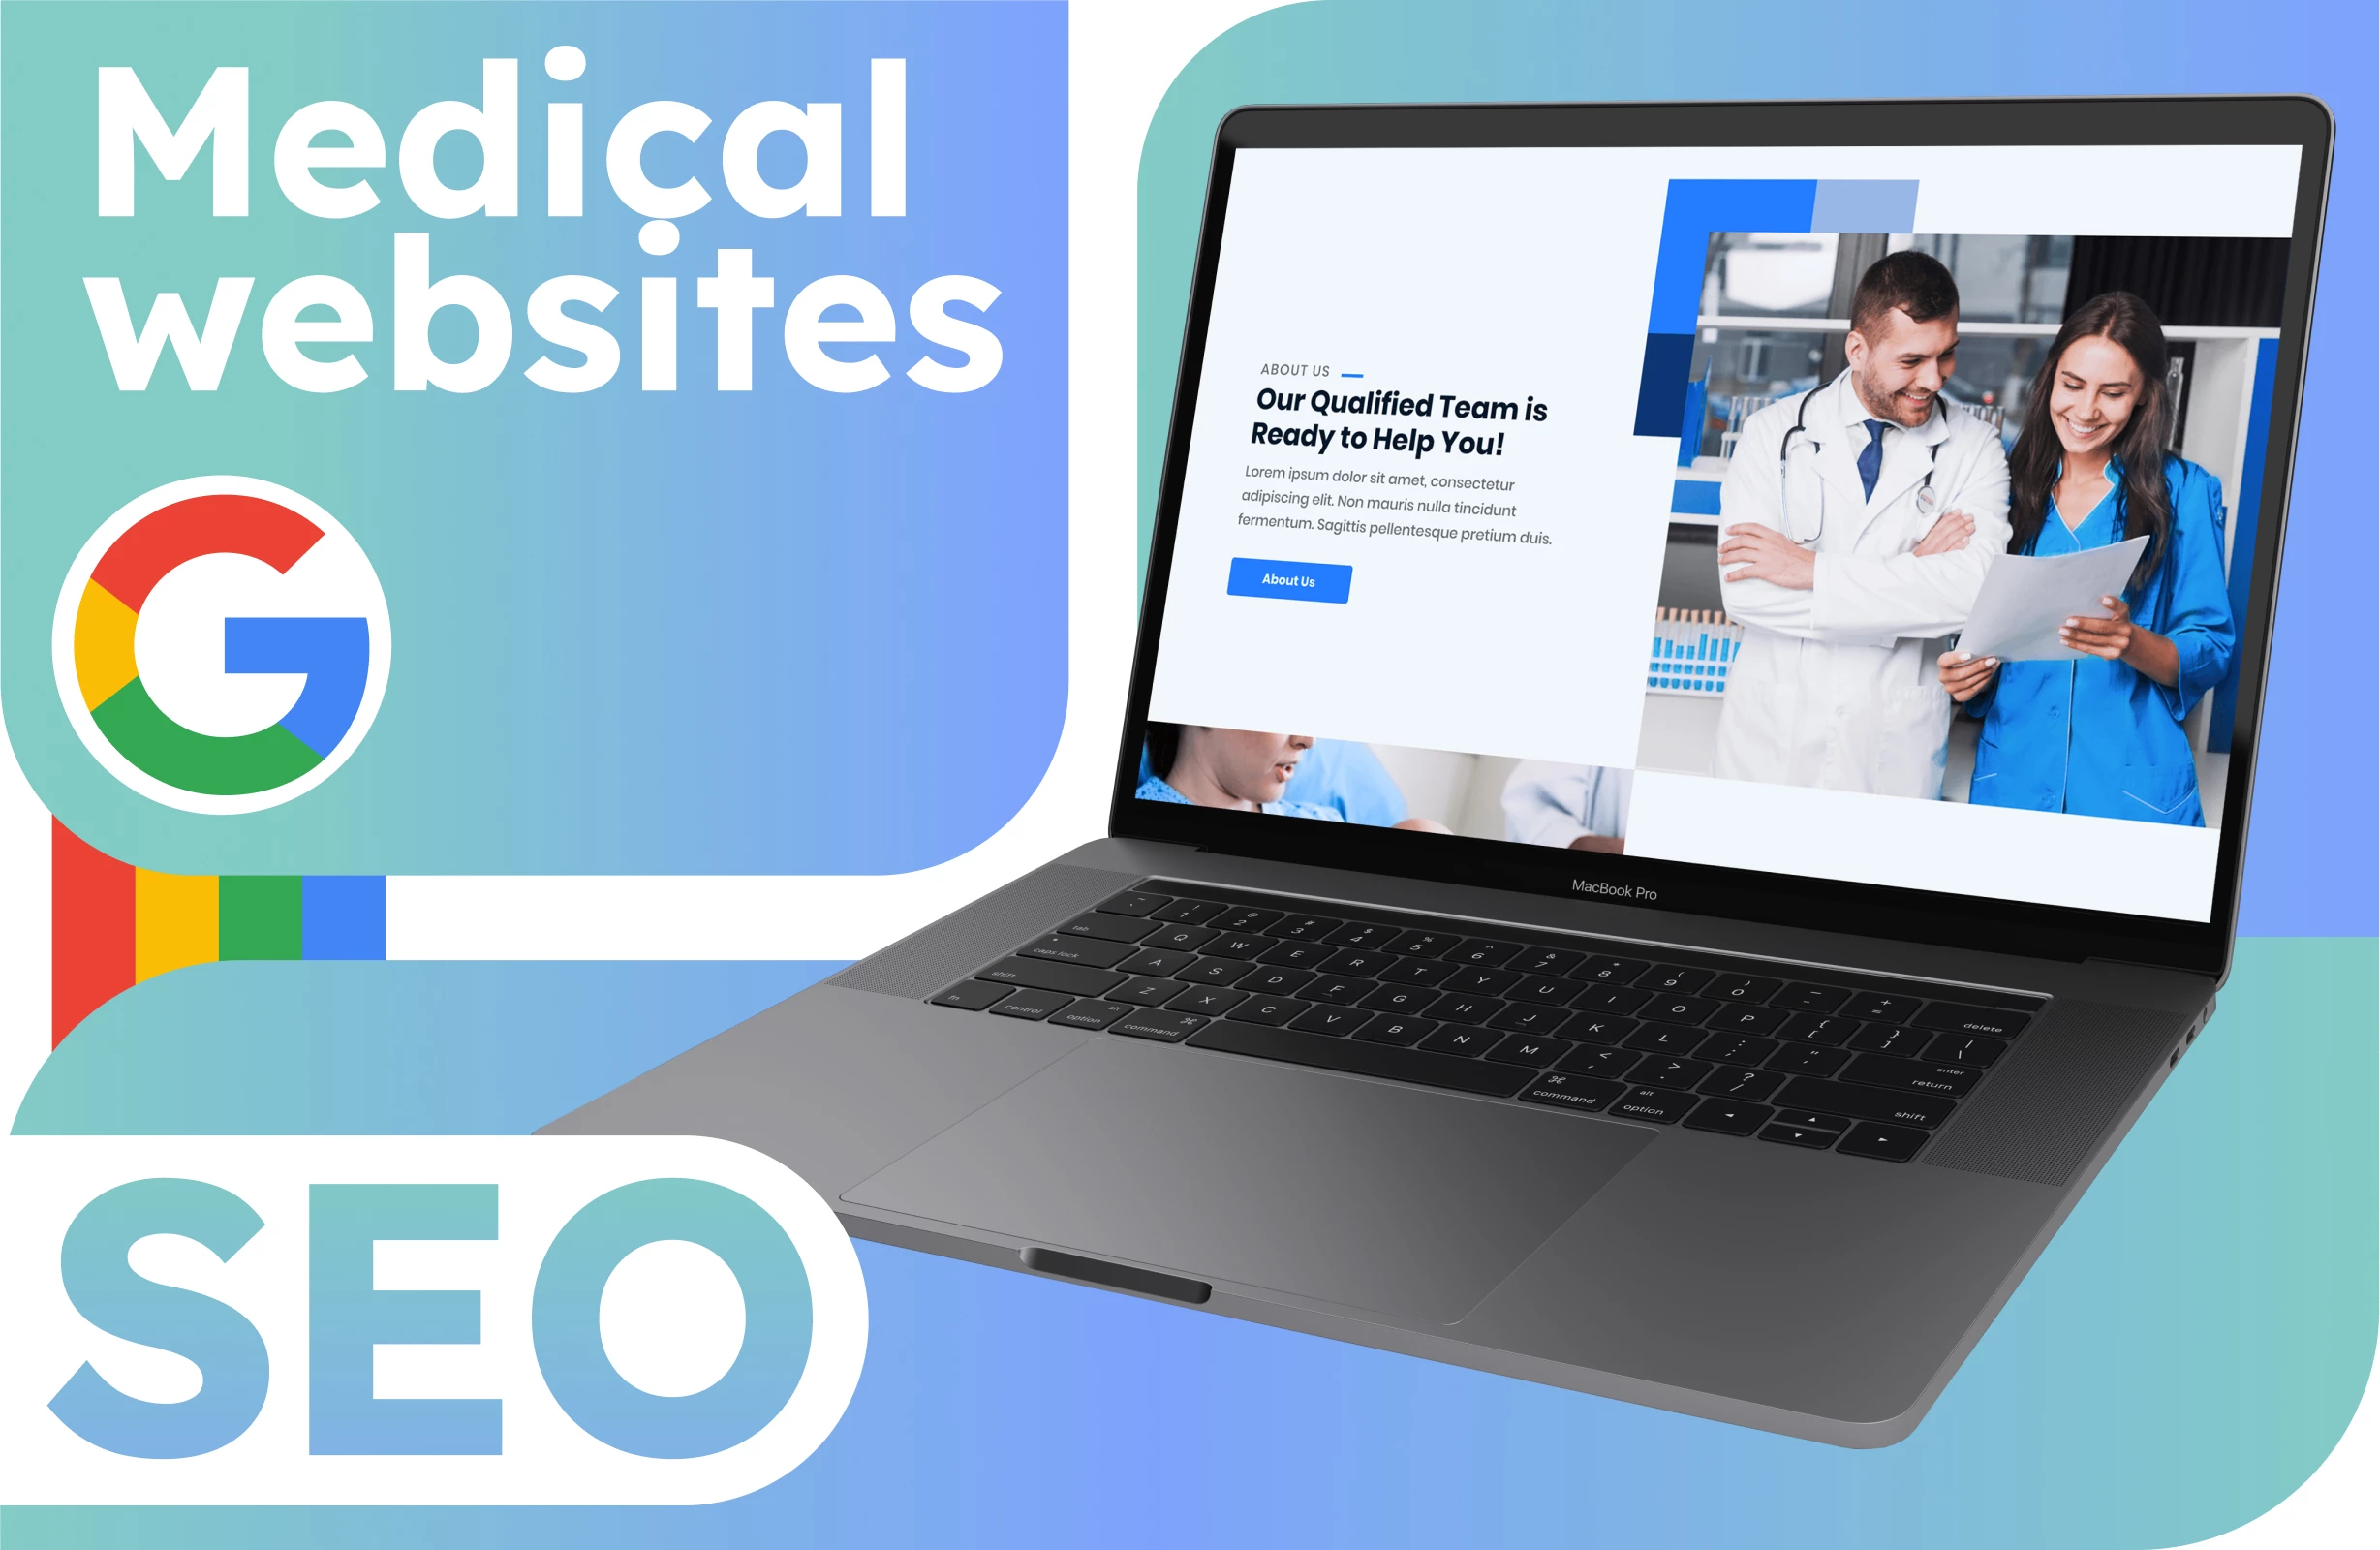 Cómo funciona el SEO en Google para sitios médicos